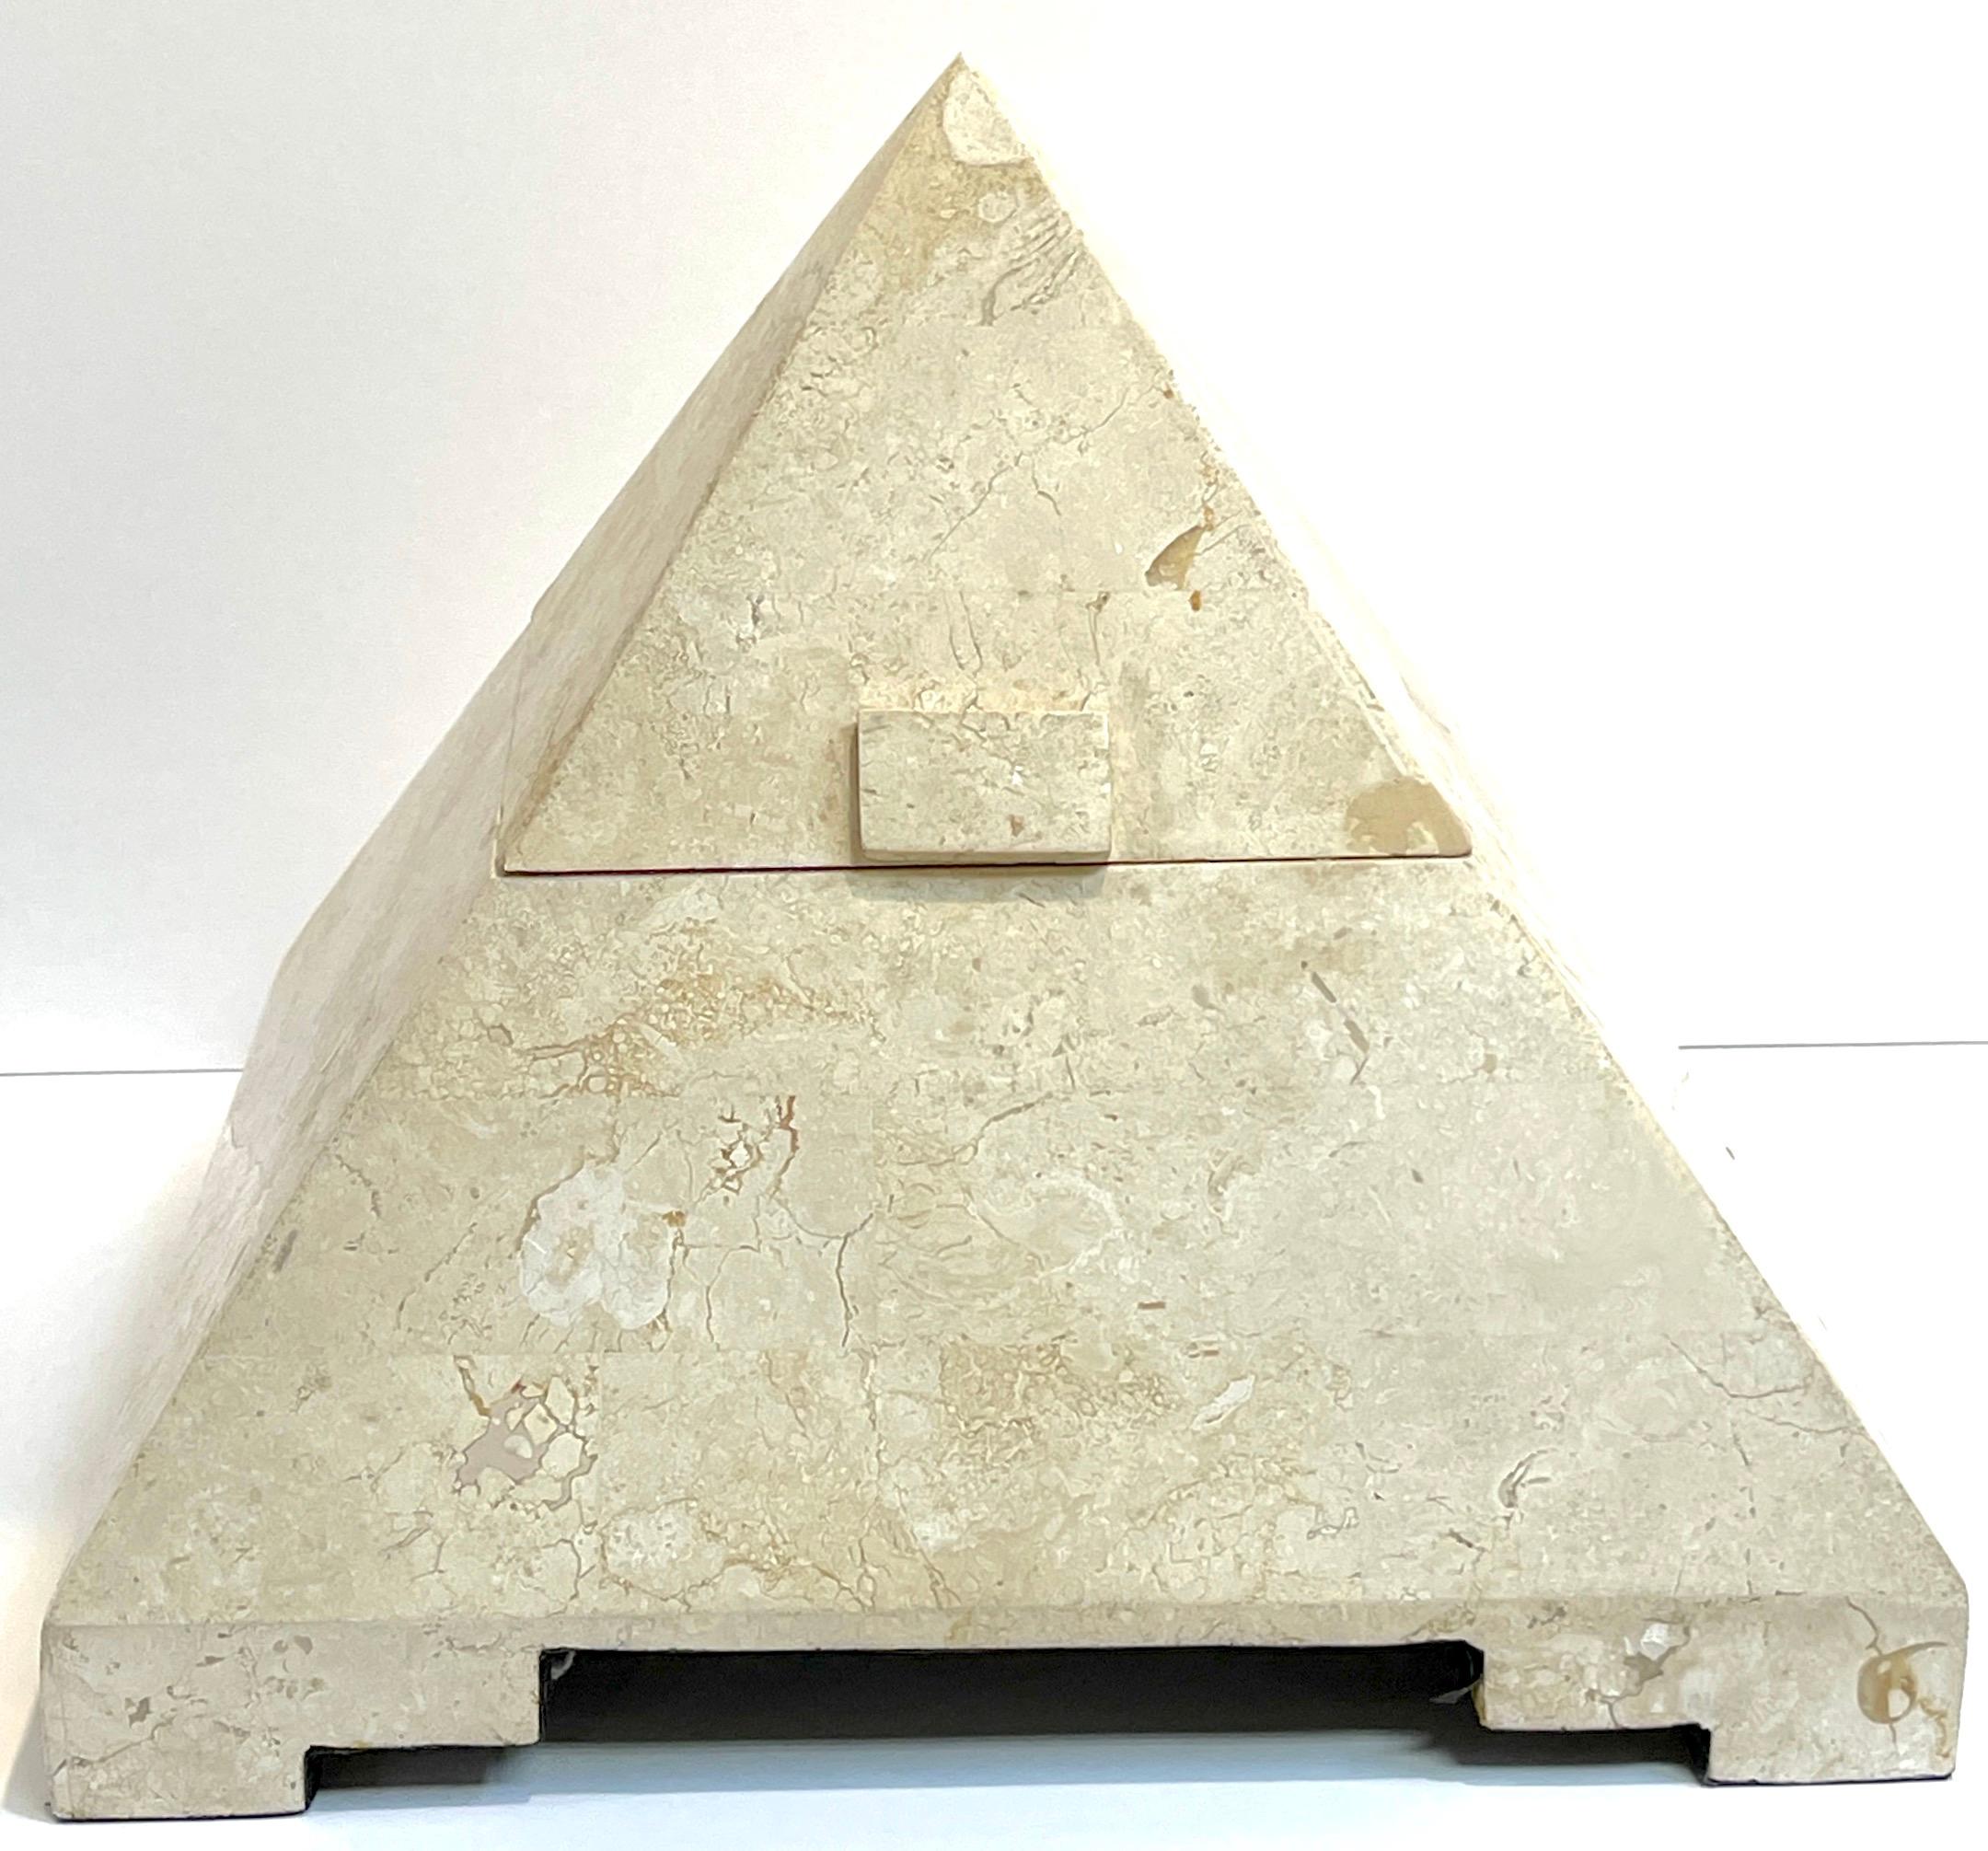 Boîte à charnière pyramidale incrustée de pierre tessellée moderne  
Ajoutez une touche d'élégance moderne à votre espace avec cette captivante boîte à charnière pyramidale moderne à incrustation de pierres tessellées. Cette pièce ne sert pas